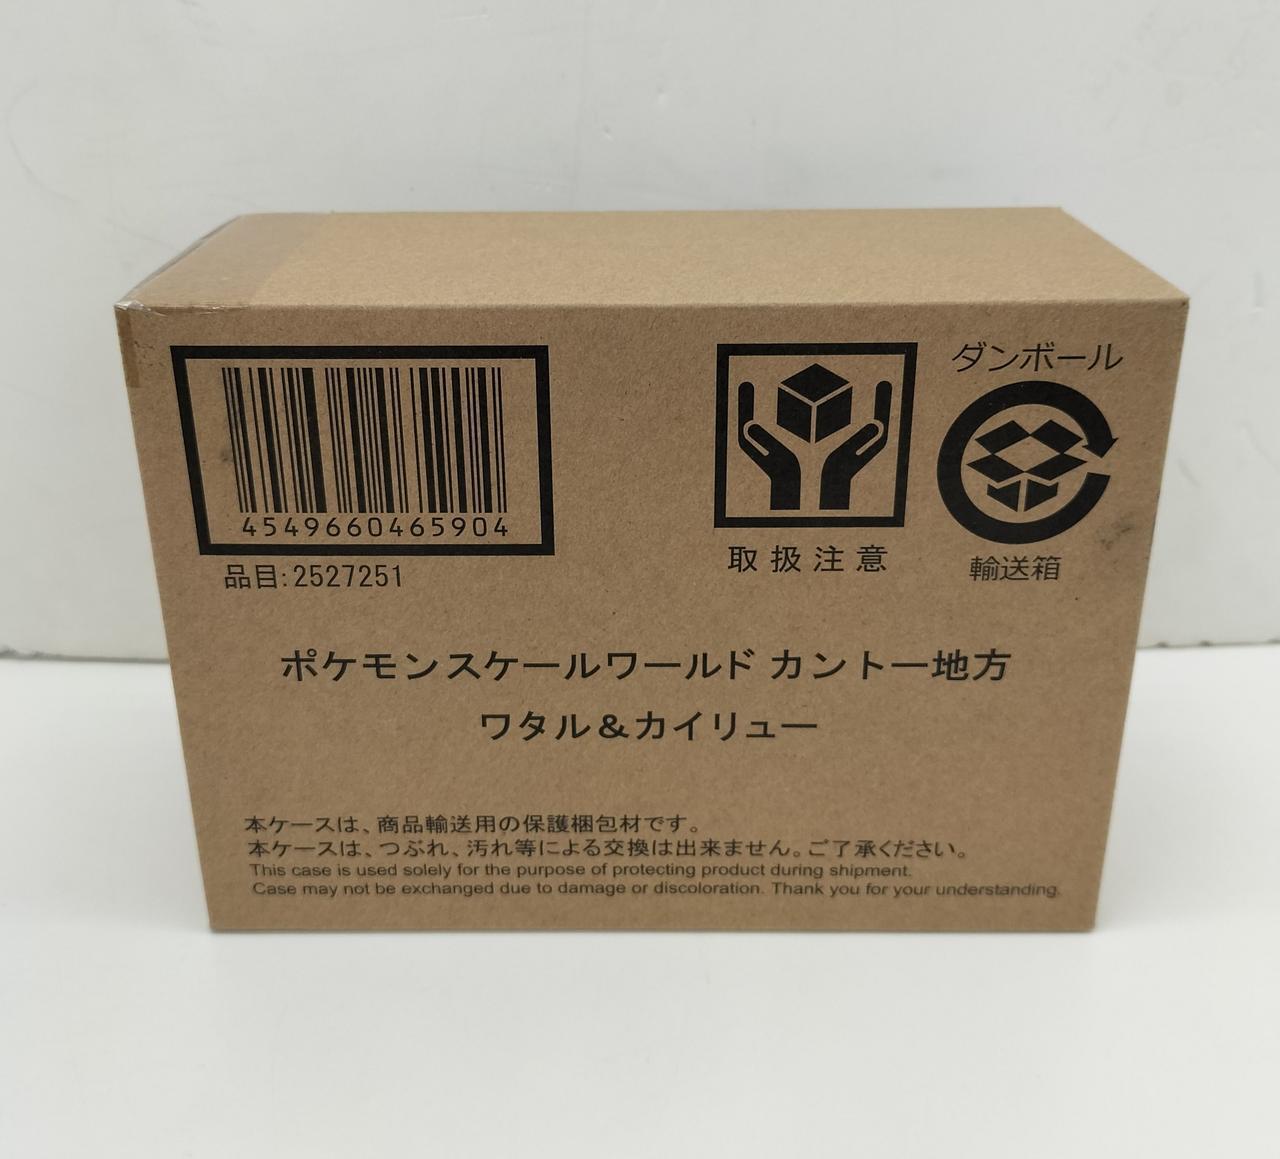 Pokemon Co., Ltd. Kanto Region Scale World